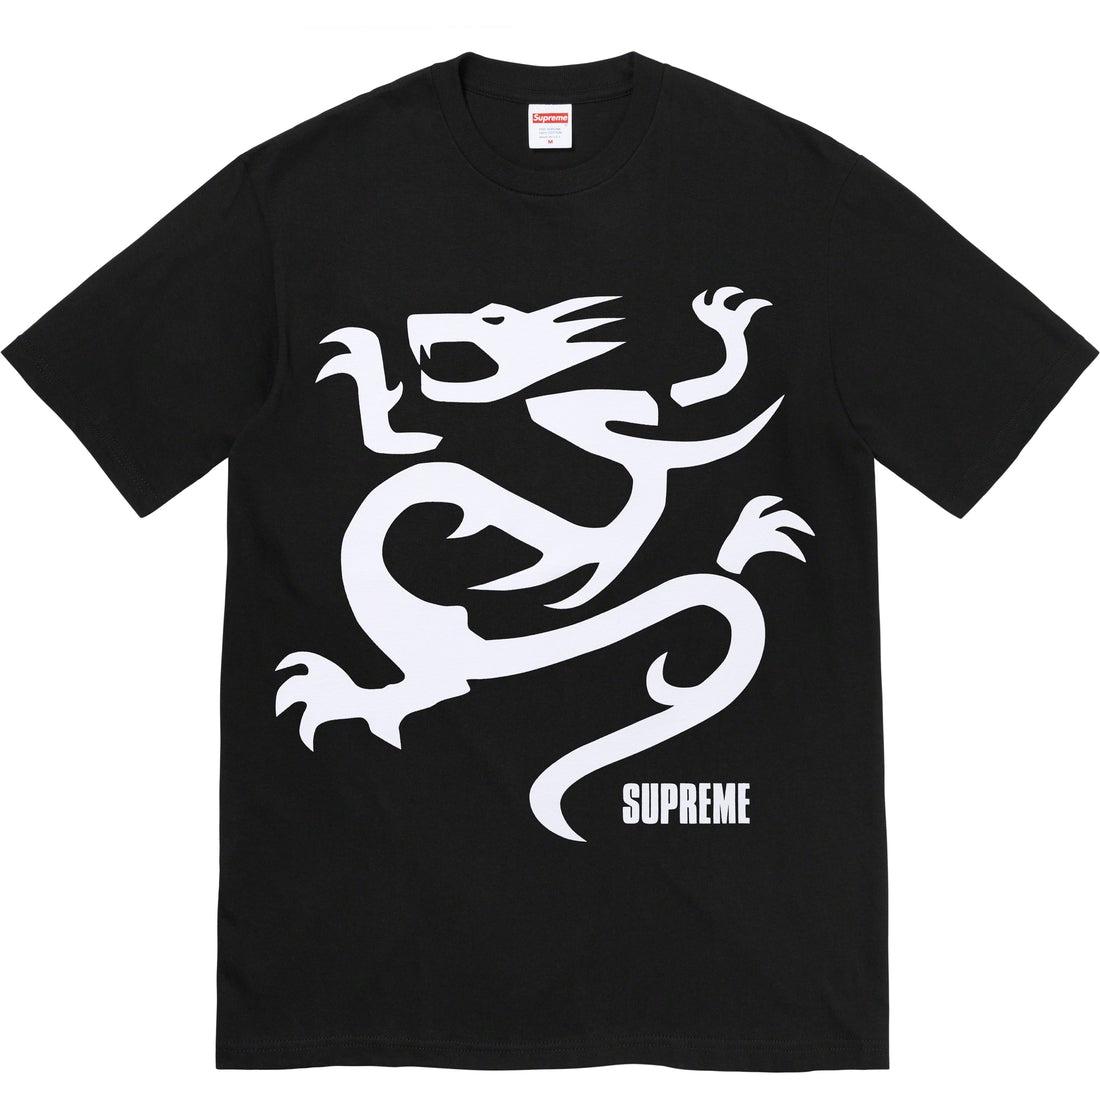 Buy Supreme Mobb Deep Dragon tee (Black) Online - Waves Never Die